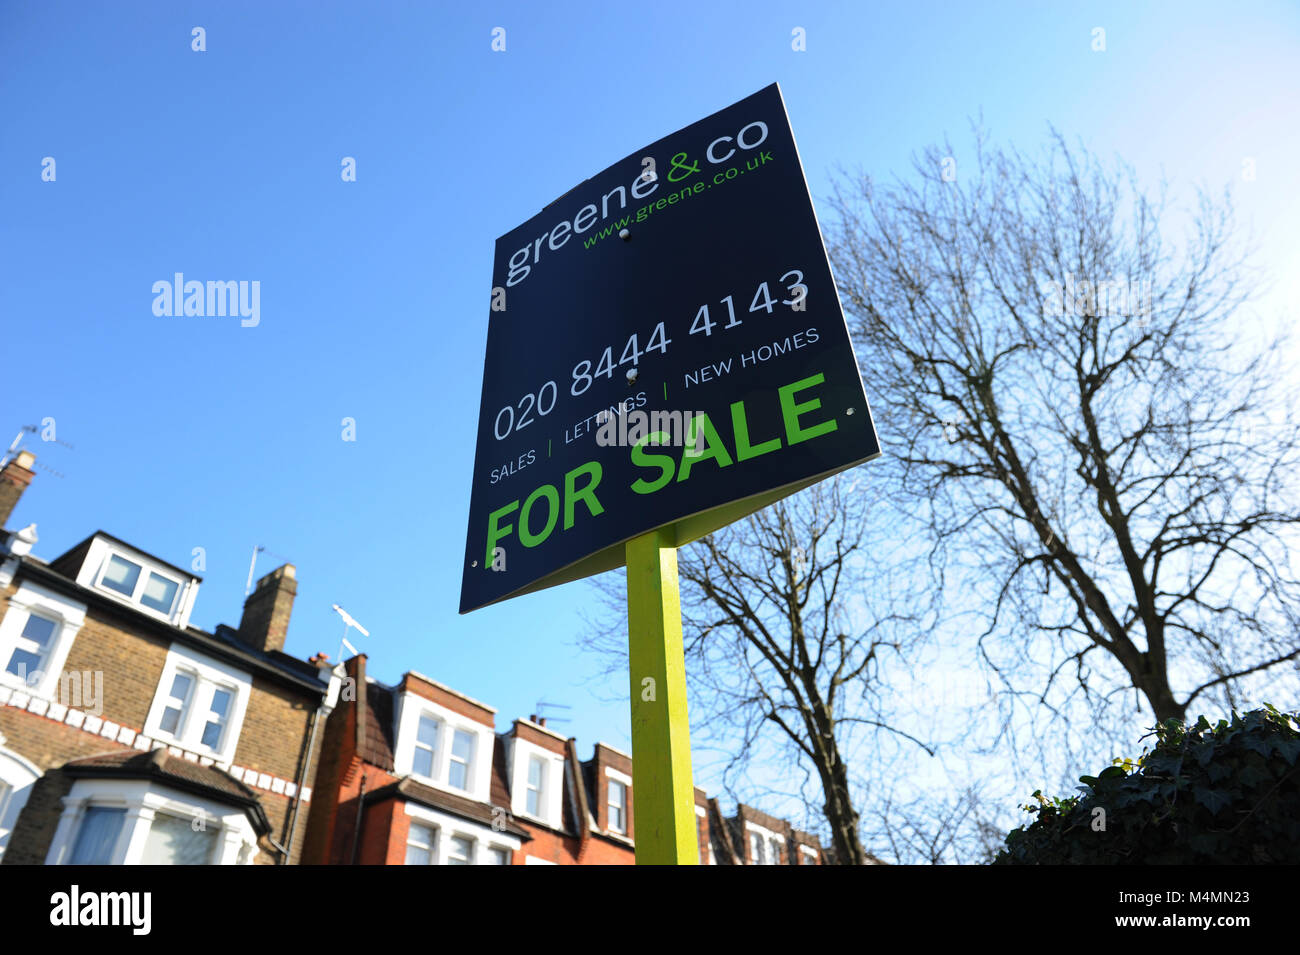 Greene & Co inmobiliaria en venta firmar en Muswell Hill, en Londres, Inglaterra Foto de stock